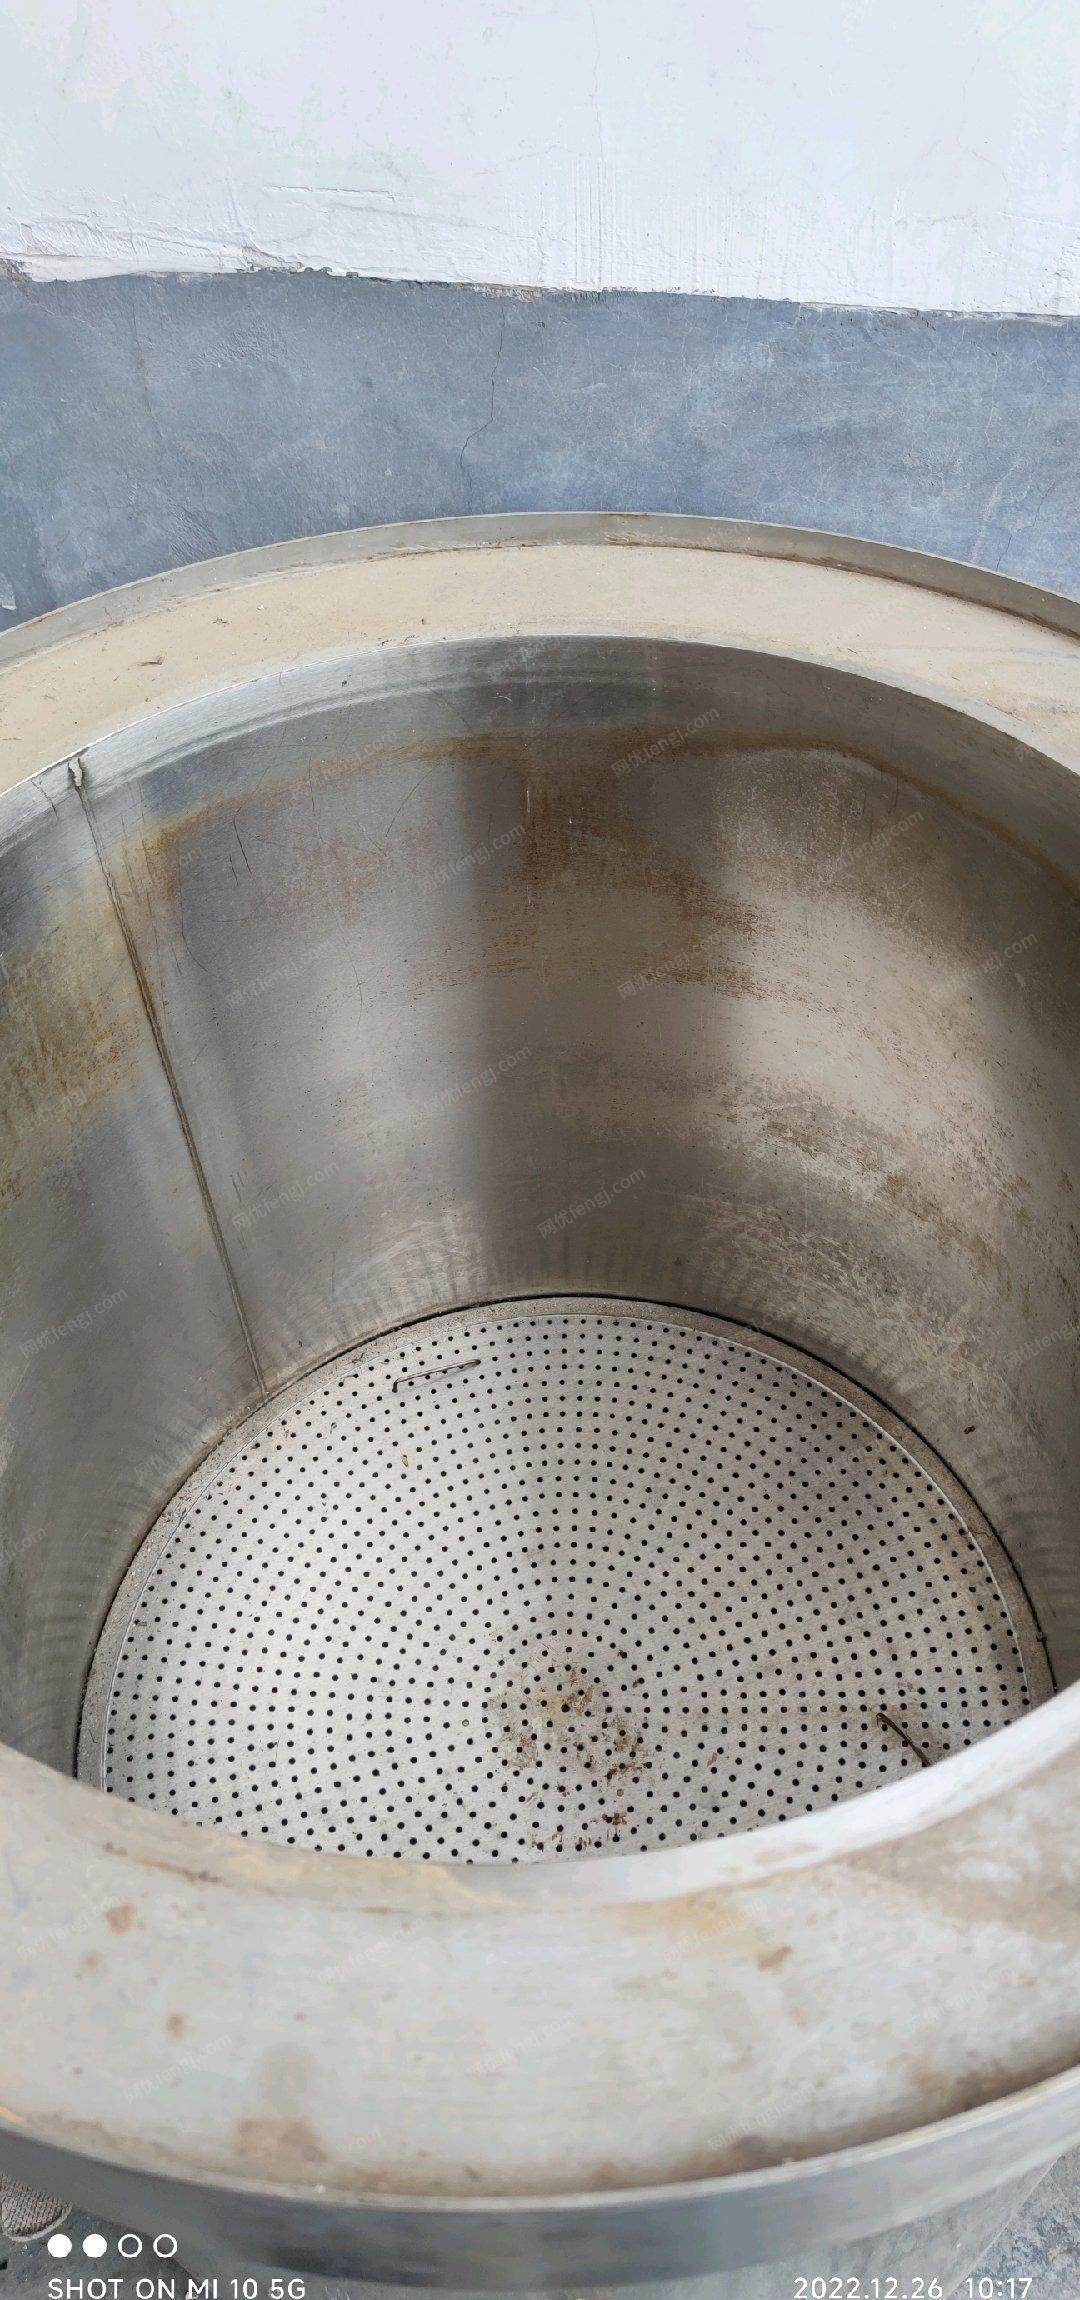 江苏徐州出售汤桶直径76厘米，内径60厘米。使用半年，八成新